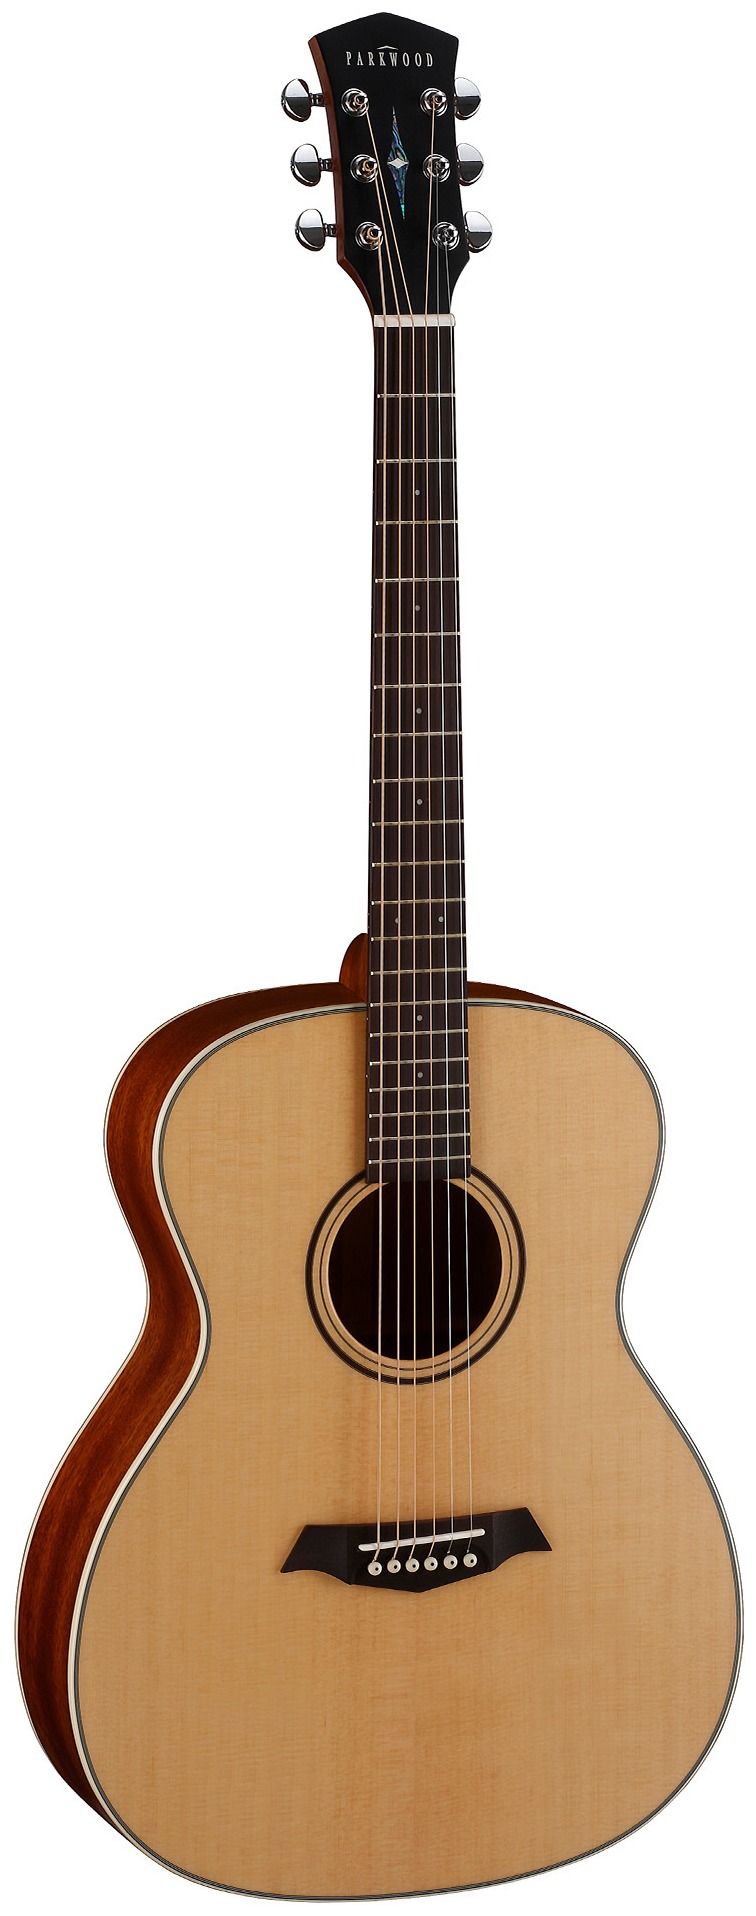 Акустические гитары Parkwood S22-GT (чехол в комплекте) акустические гитары parkwood s22 gt чехол в комплекте